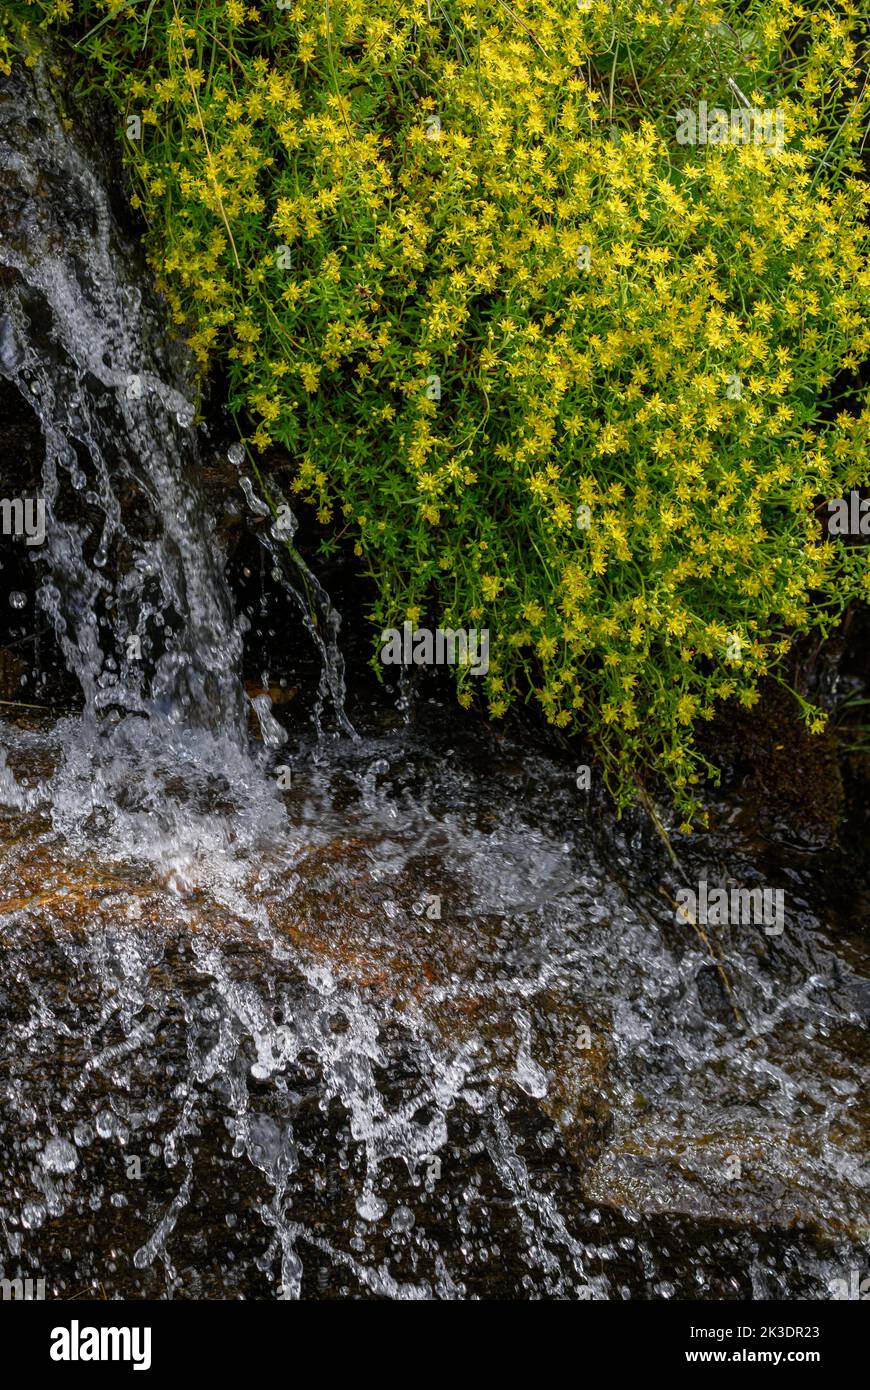 Yellow mountain saxifrage, Saxifraga aizoides, in flower in mountain stream. Italian Alps. Stock Photo